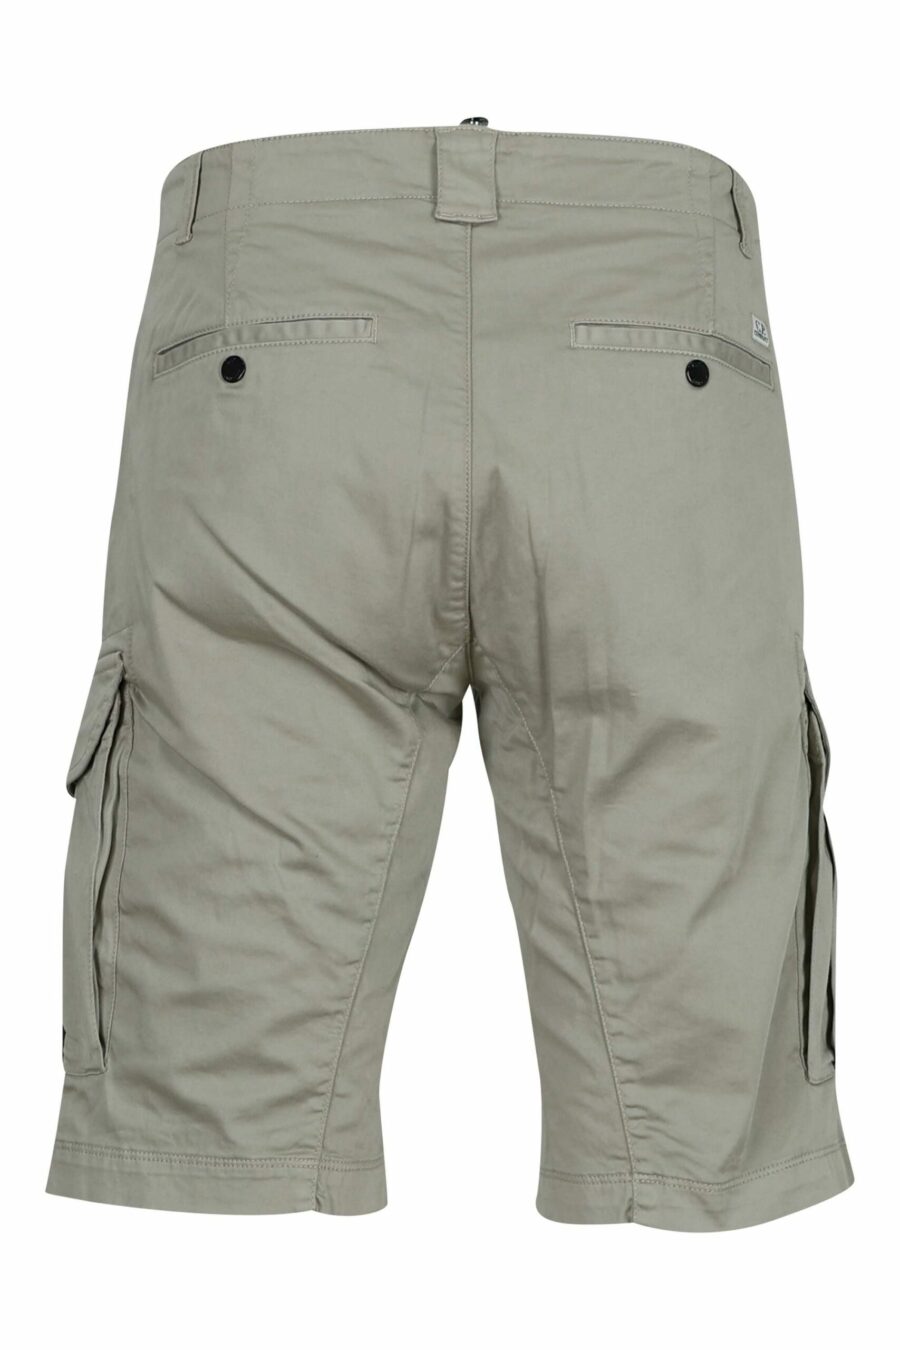 Pantalón corto beige estilo cargo con minilogo lente - 7620943697841 1 scaled